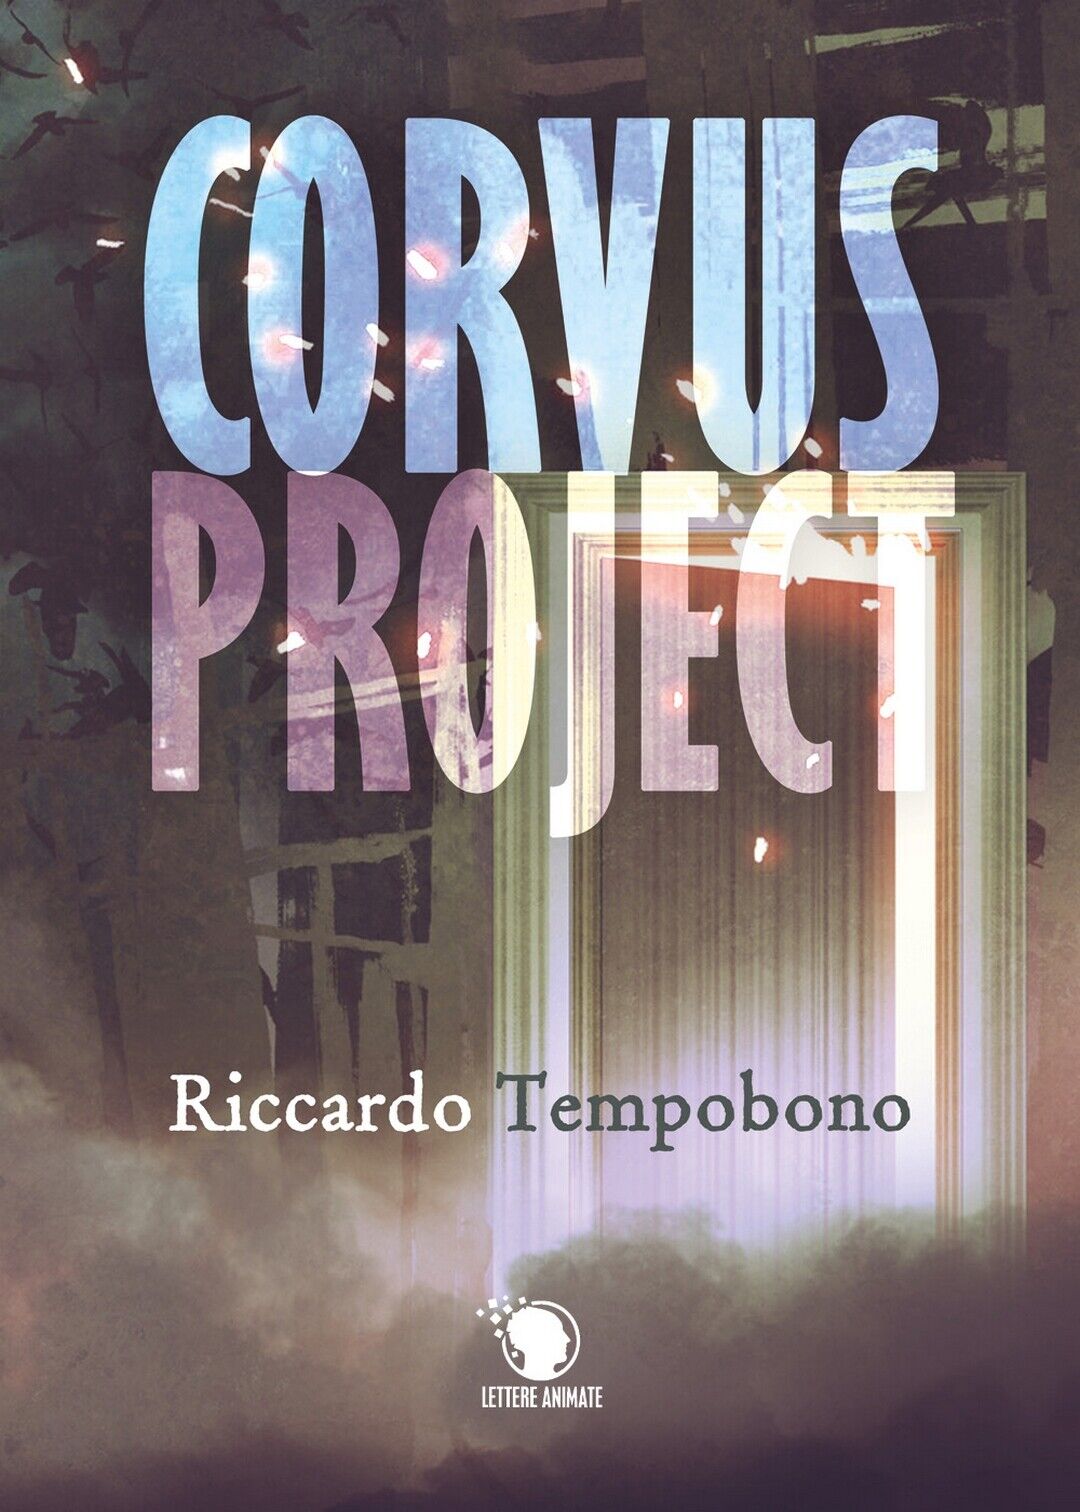 Corvus Project  di Riccardo Tempobono,  2019,  Lettere Animate Editore